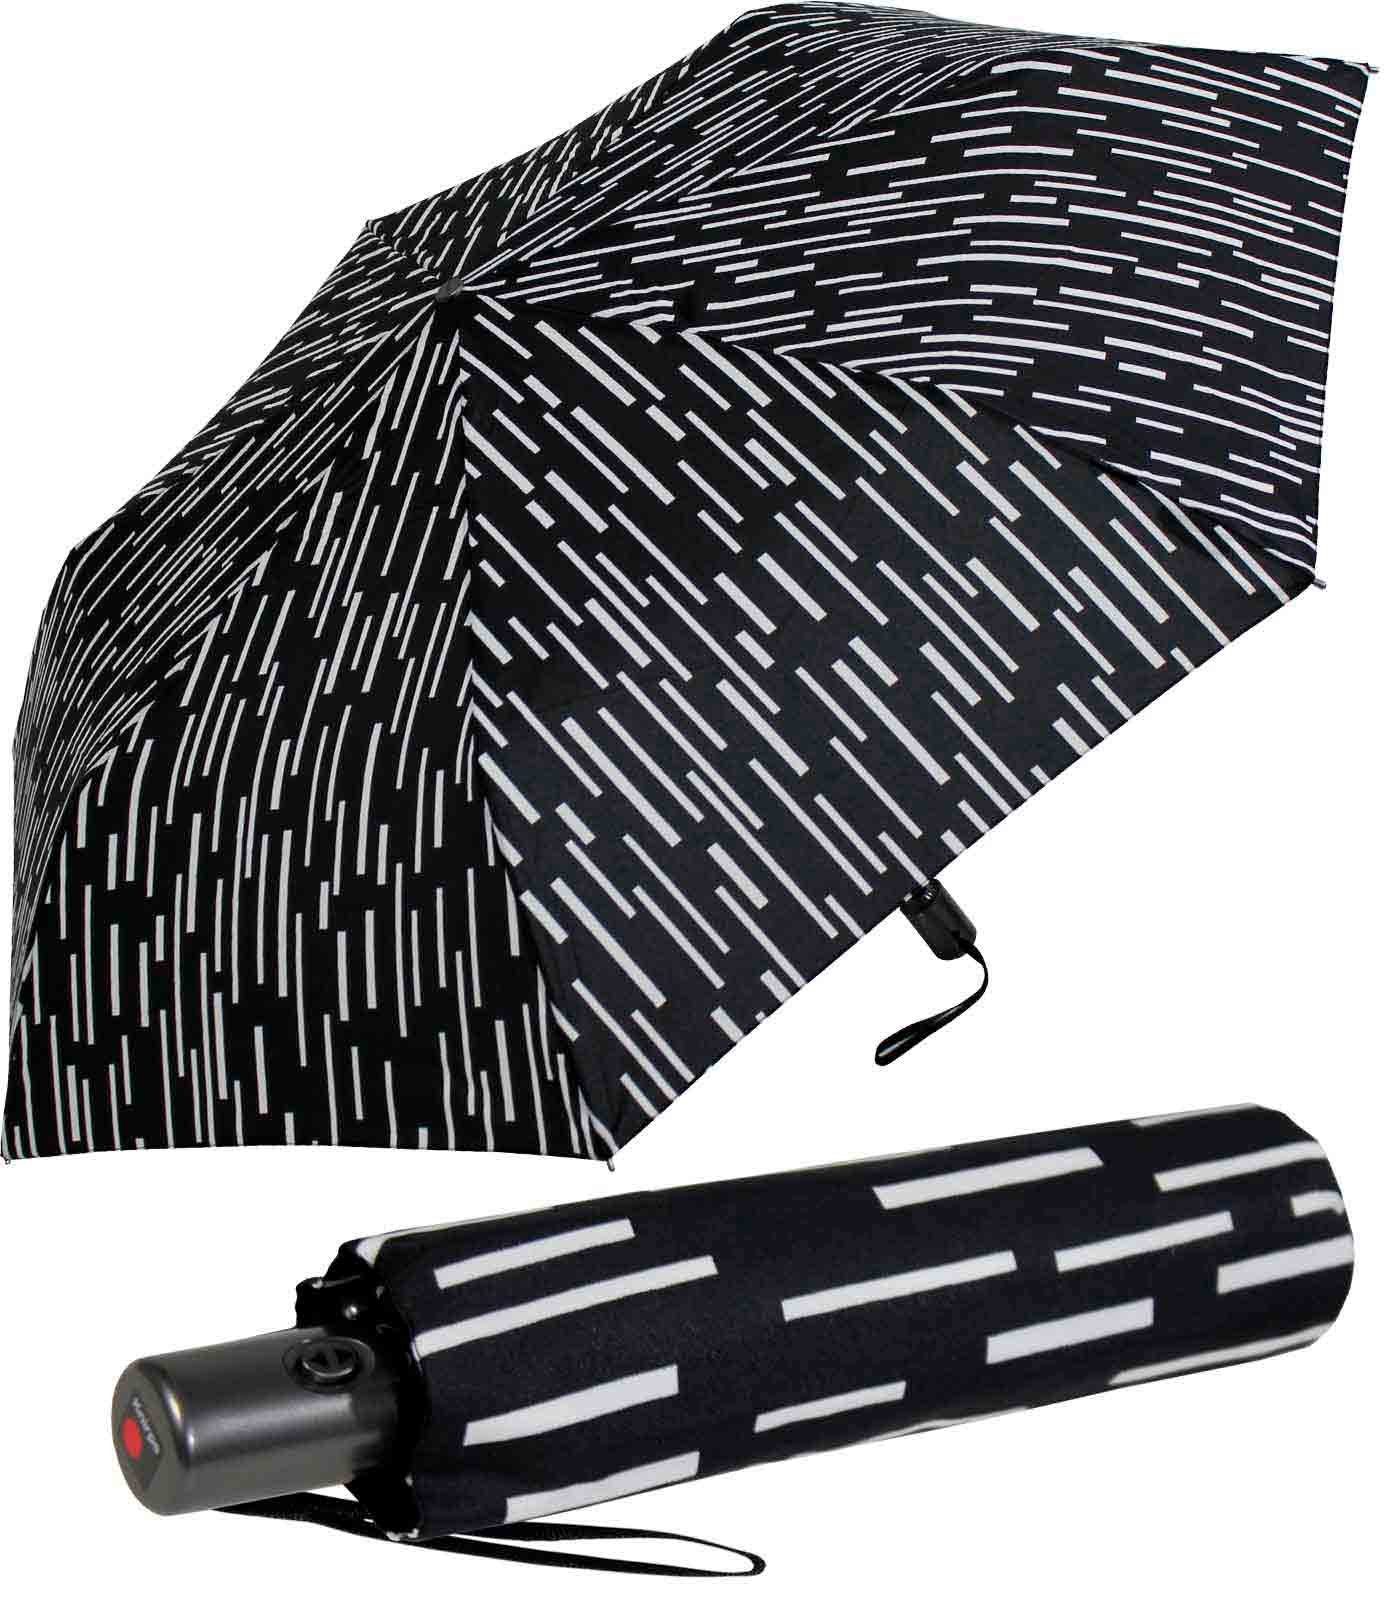 Tasche jede Knirps® Taschenregenschirm - Slim NUNO, Duomatic mit Auf-Zu-Automatik rain mit passt immer dabei, in